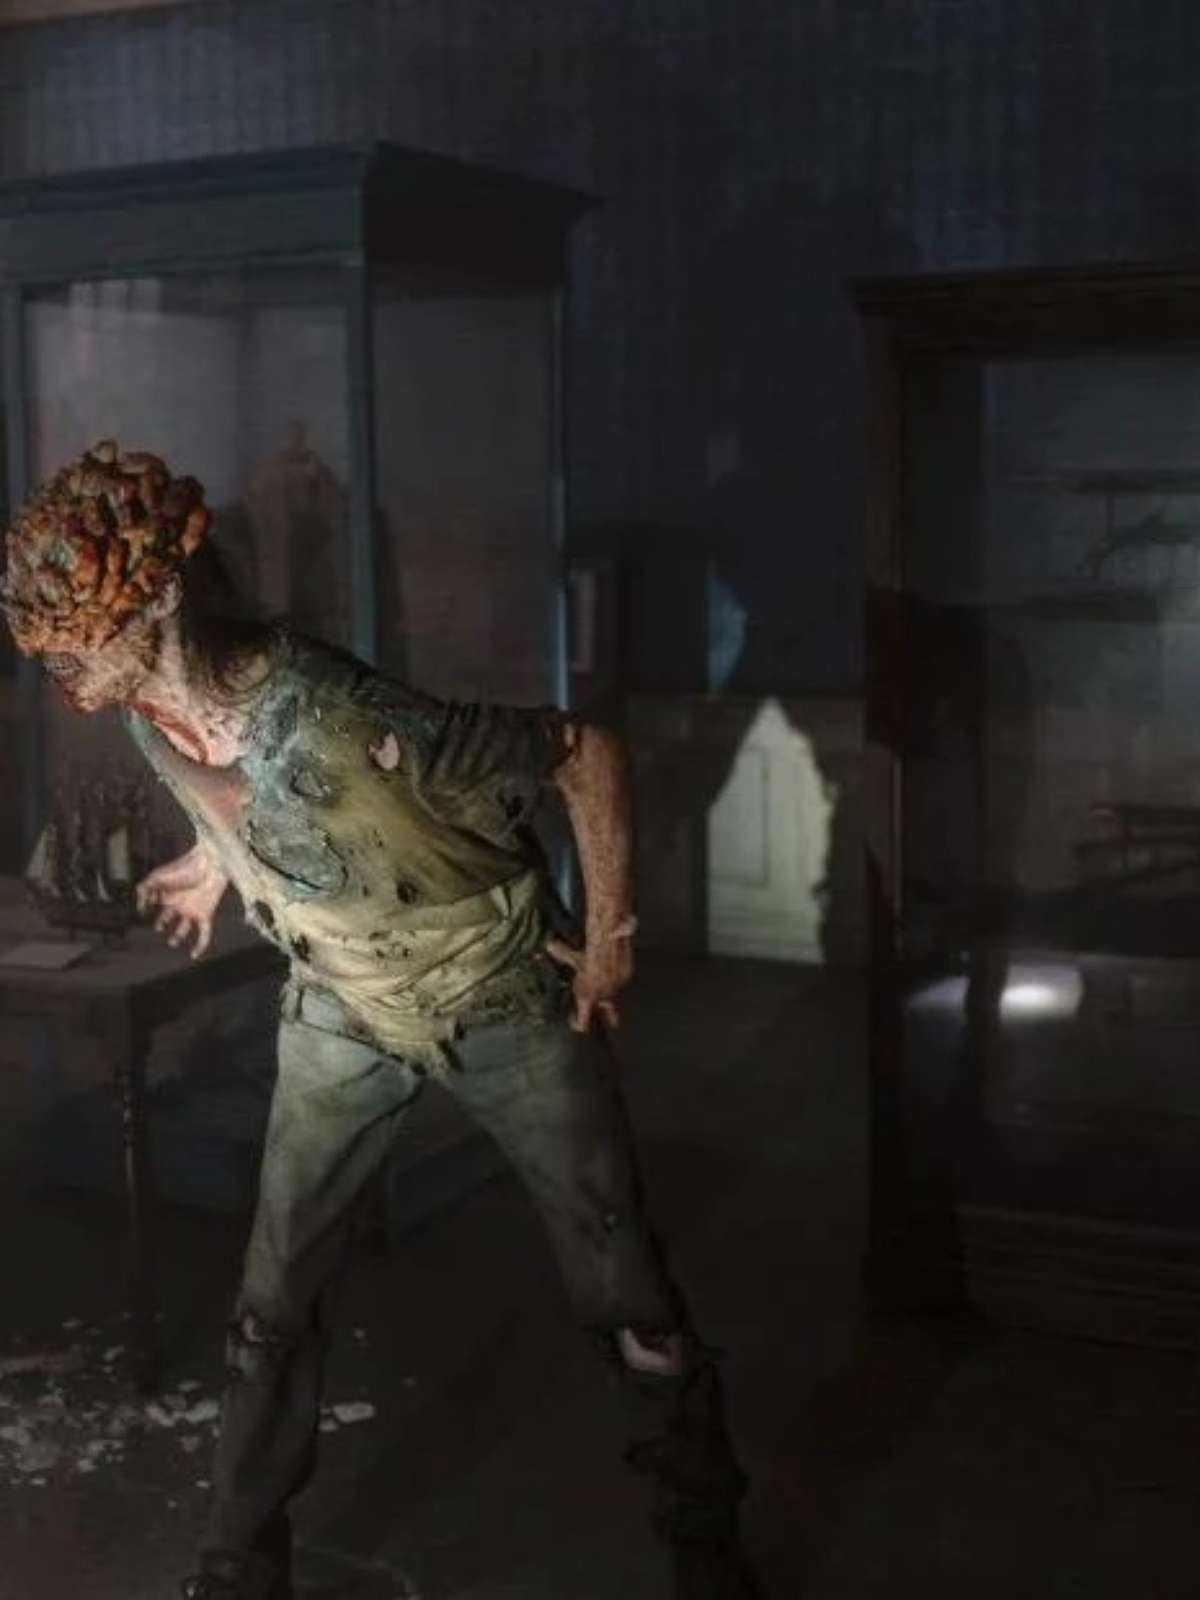 The Last of Us: principais diferenças entre a série e o jogo